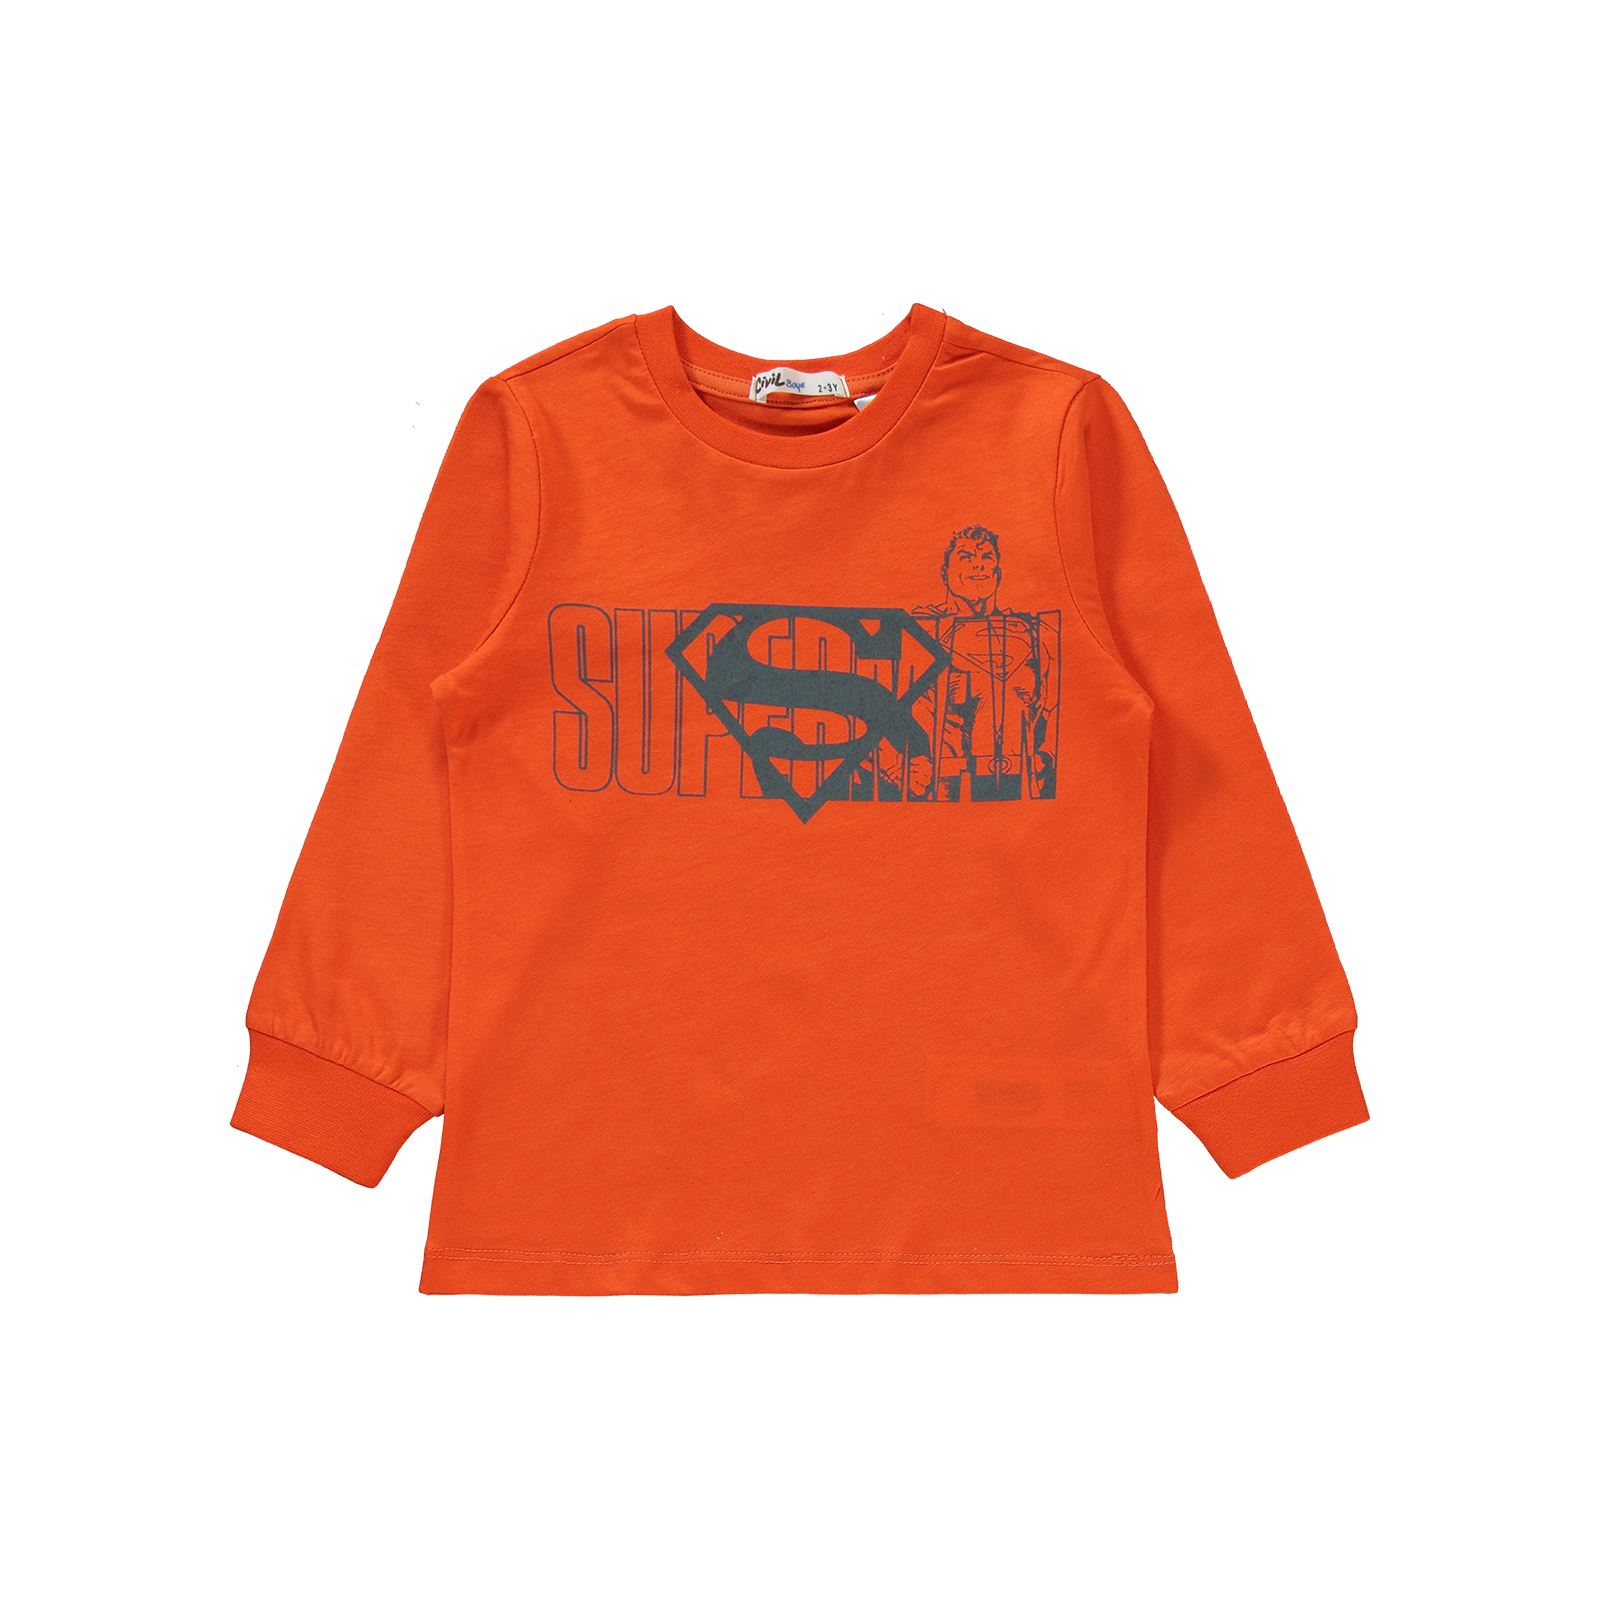 Superman Erkek Çocuk Pijama Takımı 2-5 Yaş Oranj